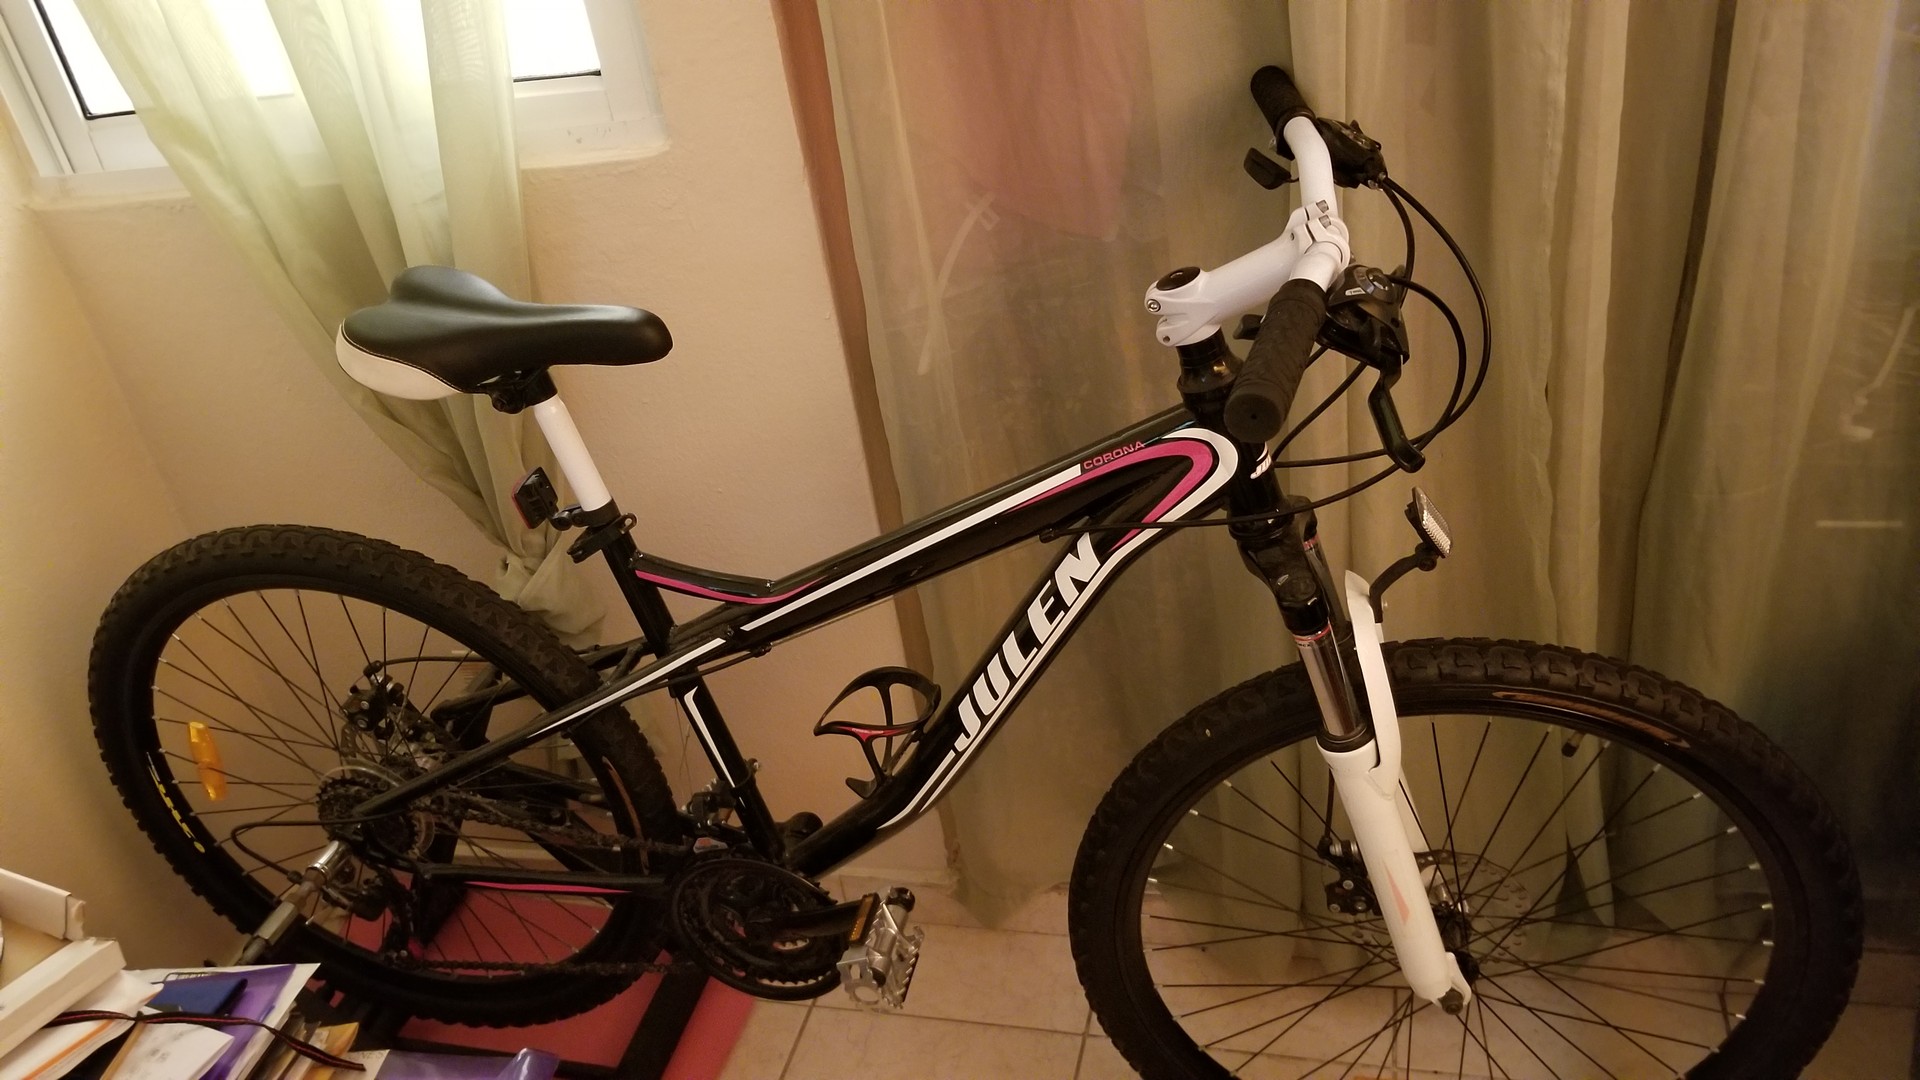 bicicletas y accesorios - Bicicleta marca julen y rolo de bicicleta